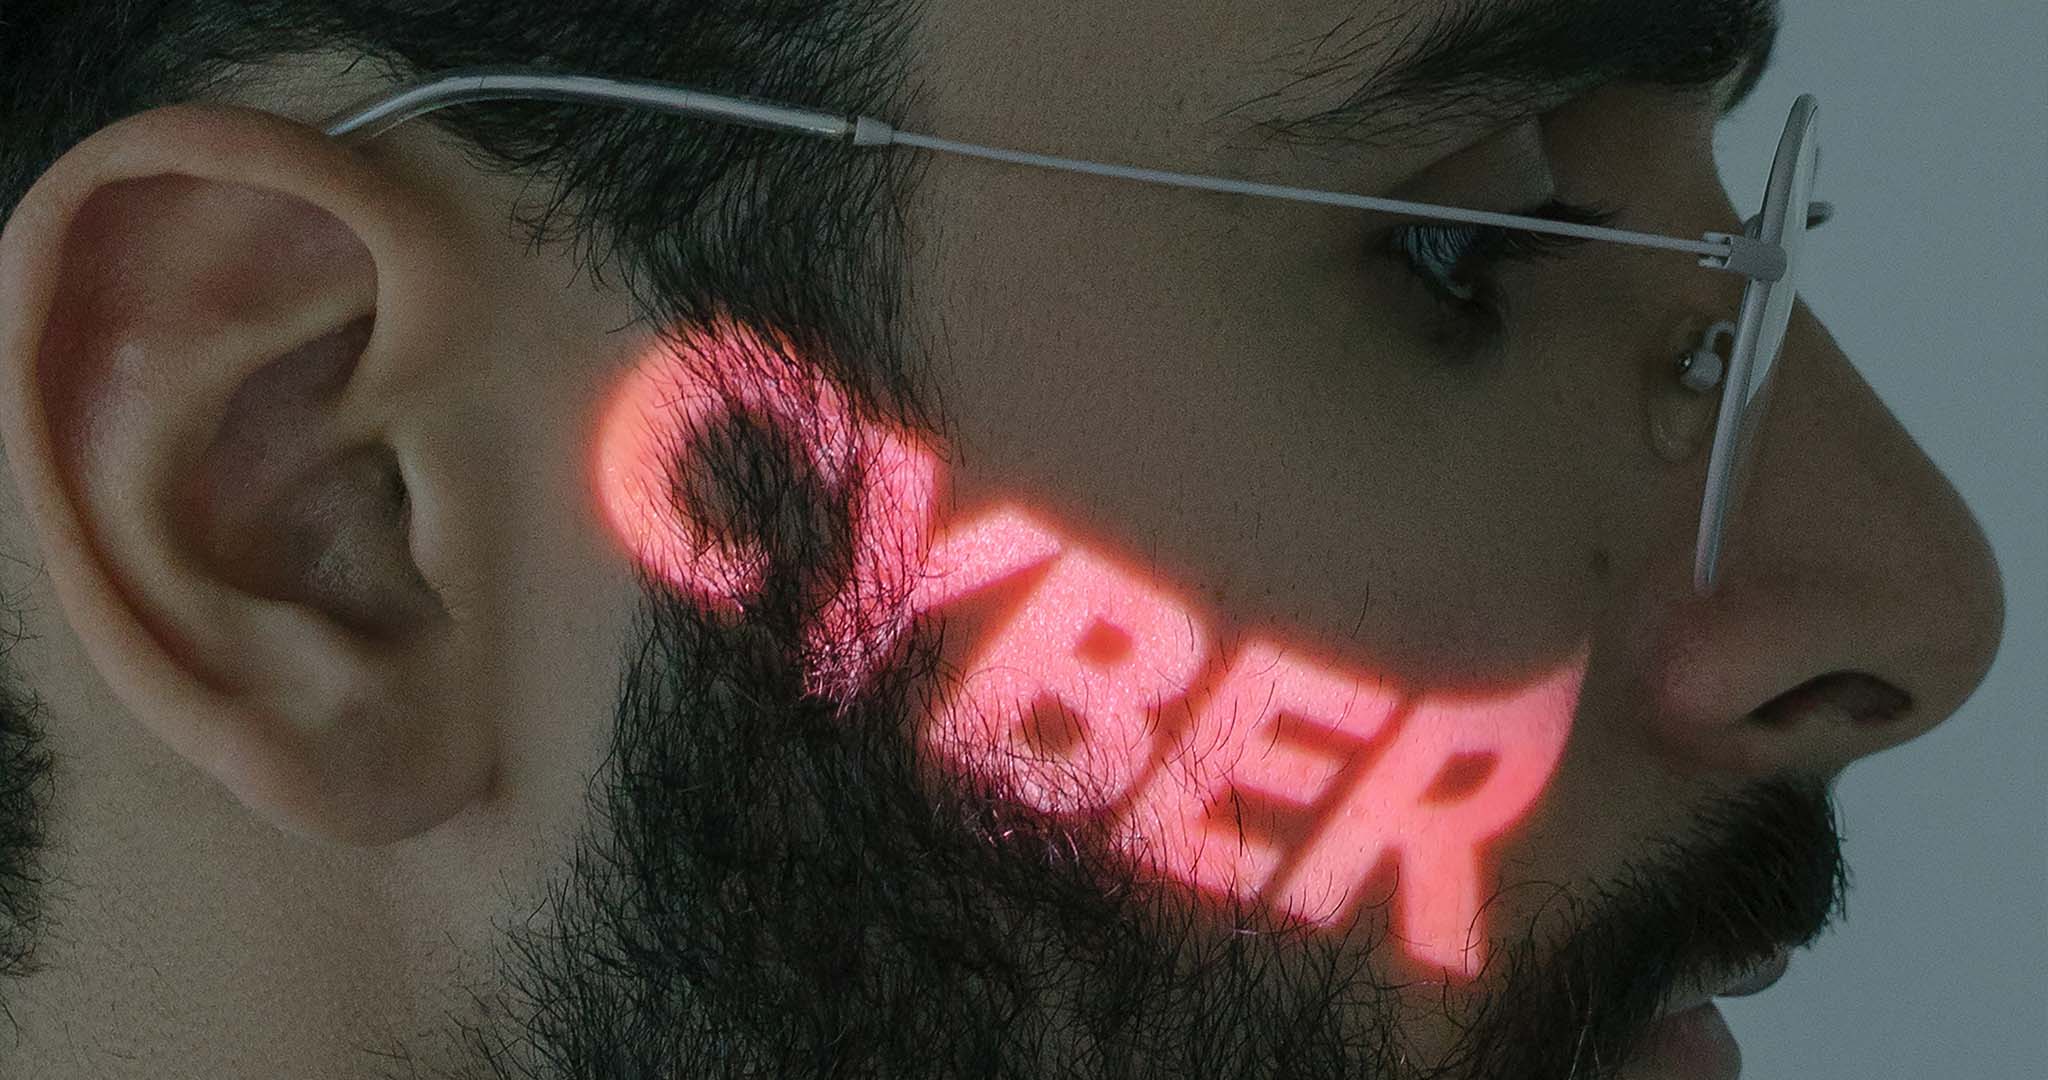 un homme avec écrit "cyber" sur sa joue